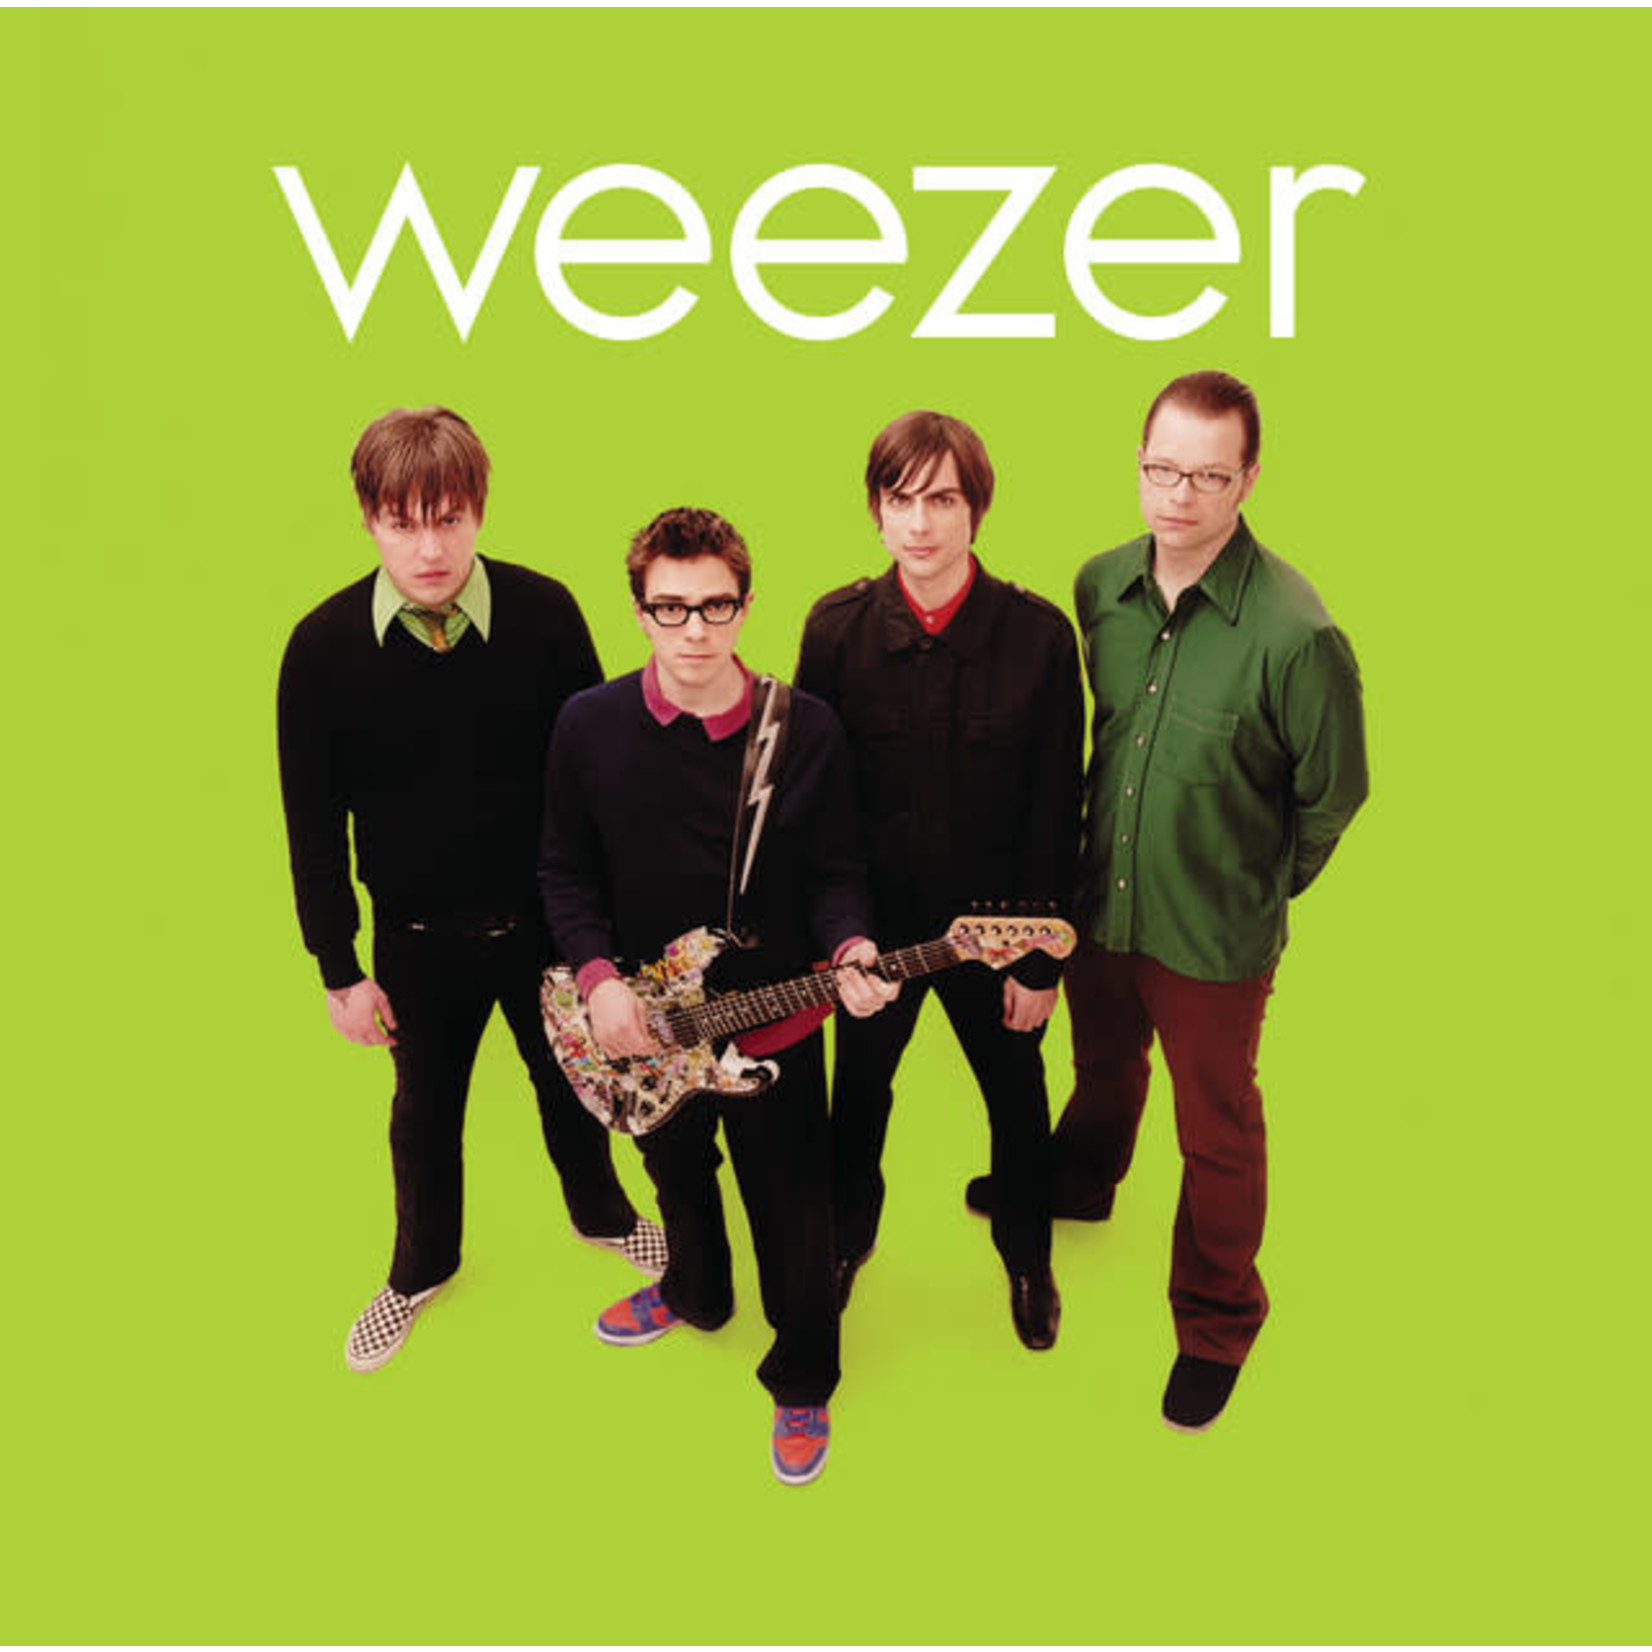 Vinyl Weezer - Weezer (Green Album)